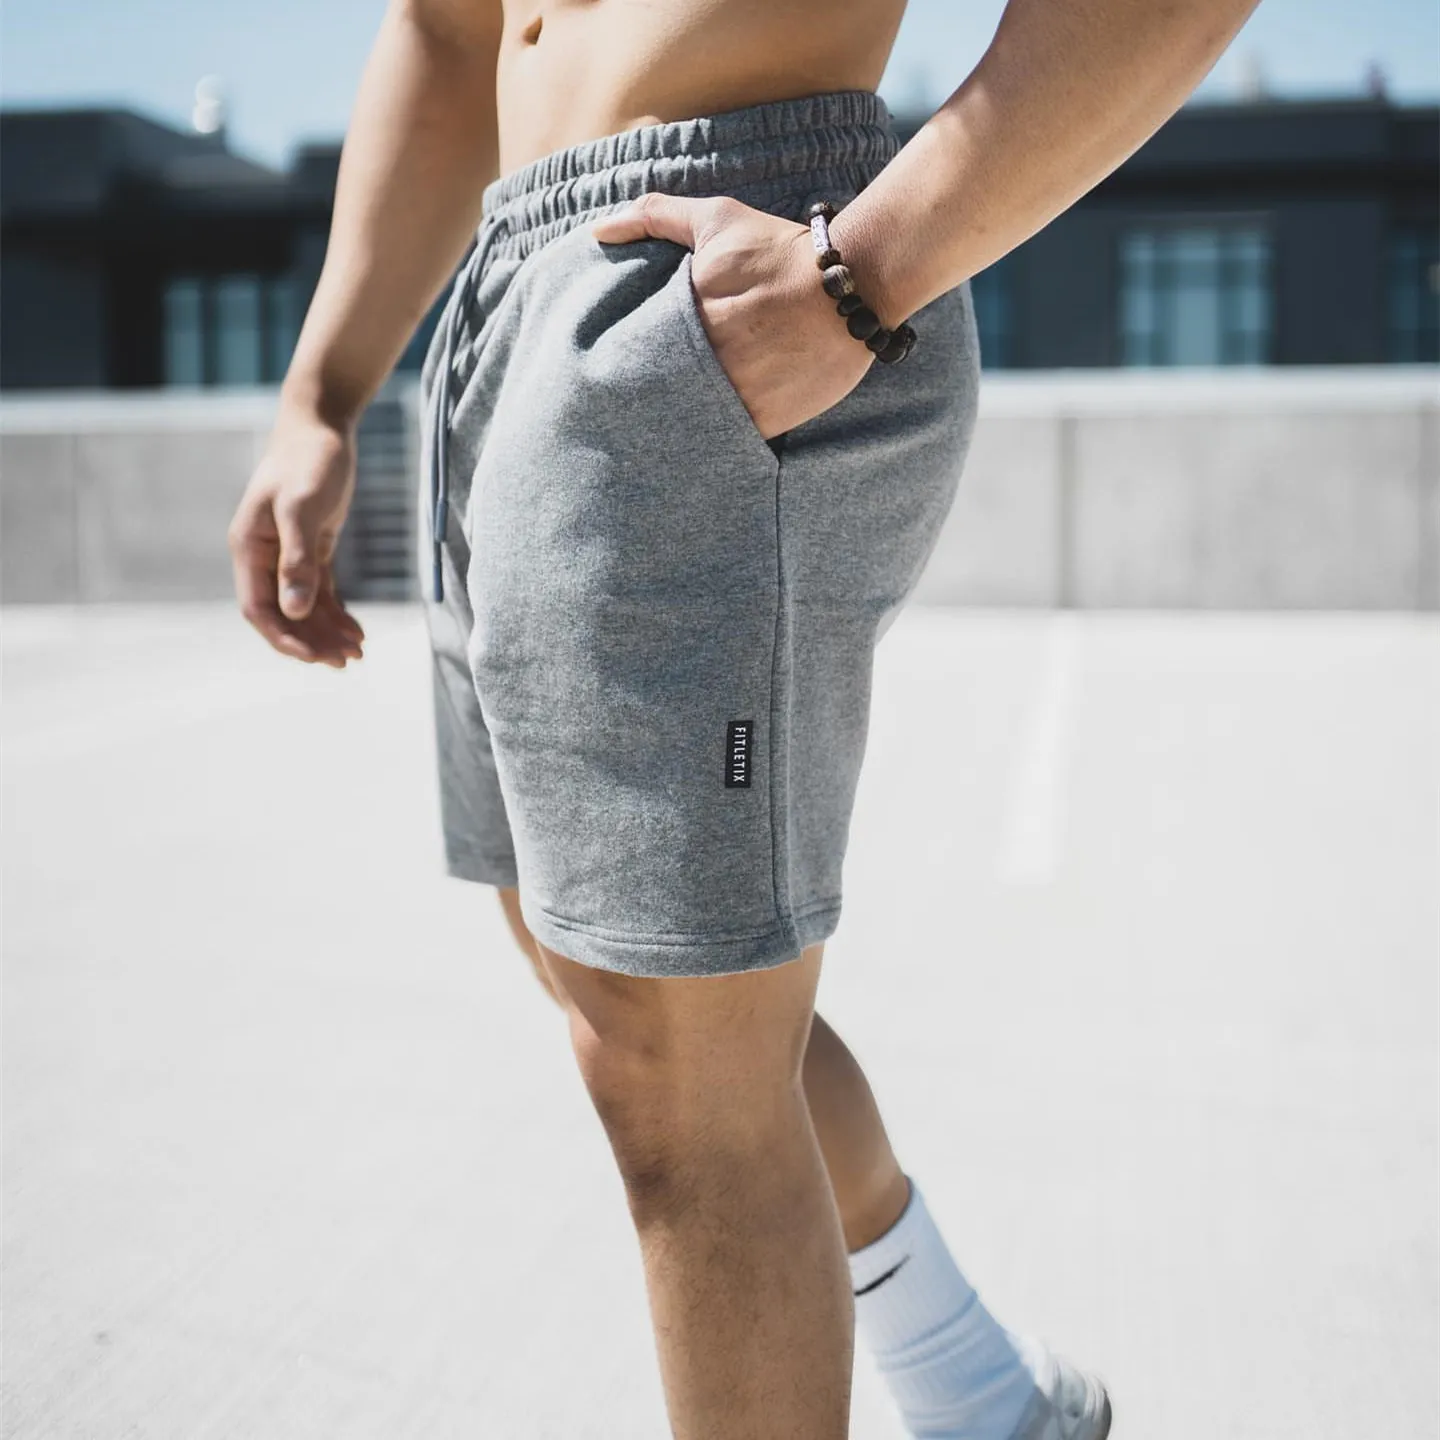 2022 Yeni Erkek Spor Salyaları Fitness Gevşek Şort Vücut İnşa Joggers Yaz Hızlı kuru serin kısa pantolon erkek rahat modern şık marka S